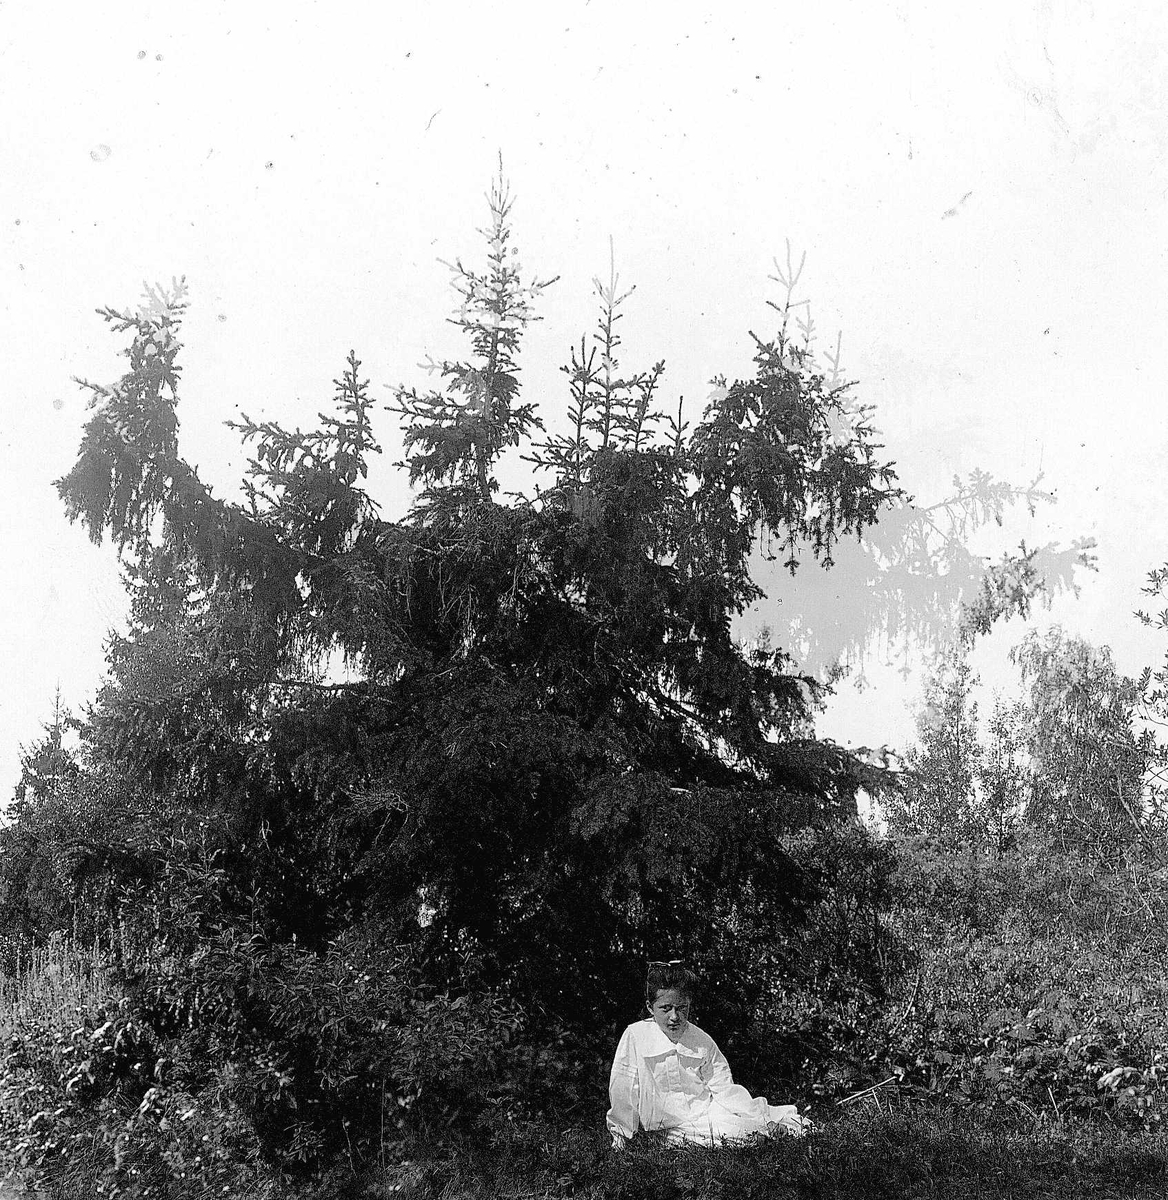 Skogparti med sittende pike, ukjent sted.
Serie tatt av Robert Collett (1842-1913), amatørfotograf og professor i zoologi. 